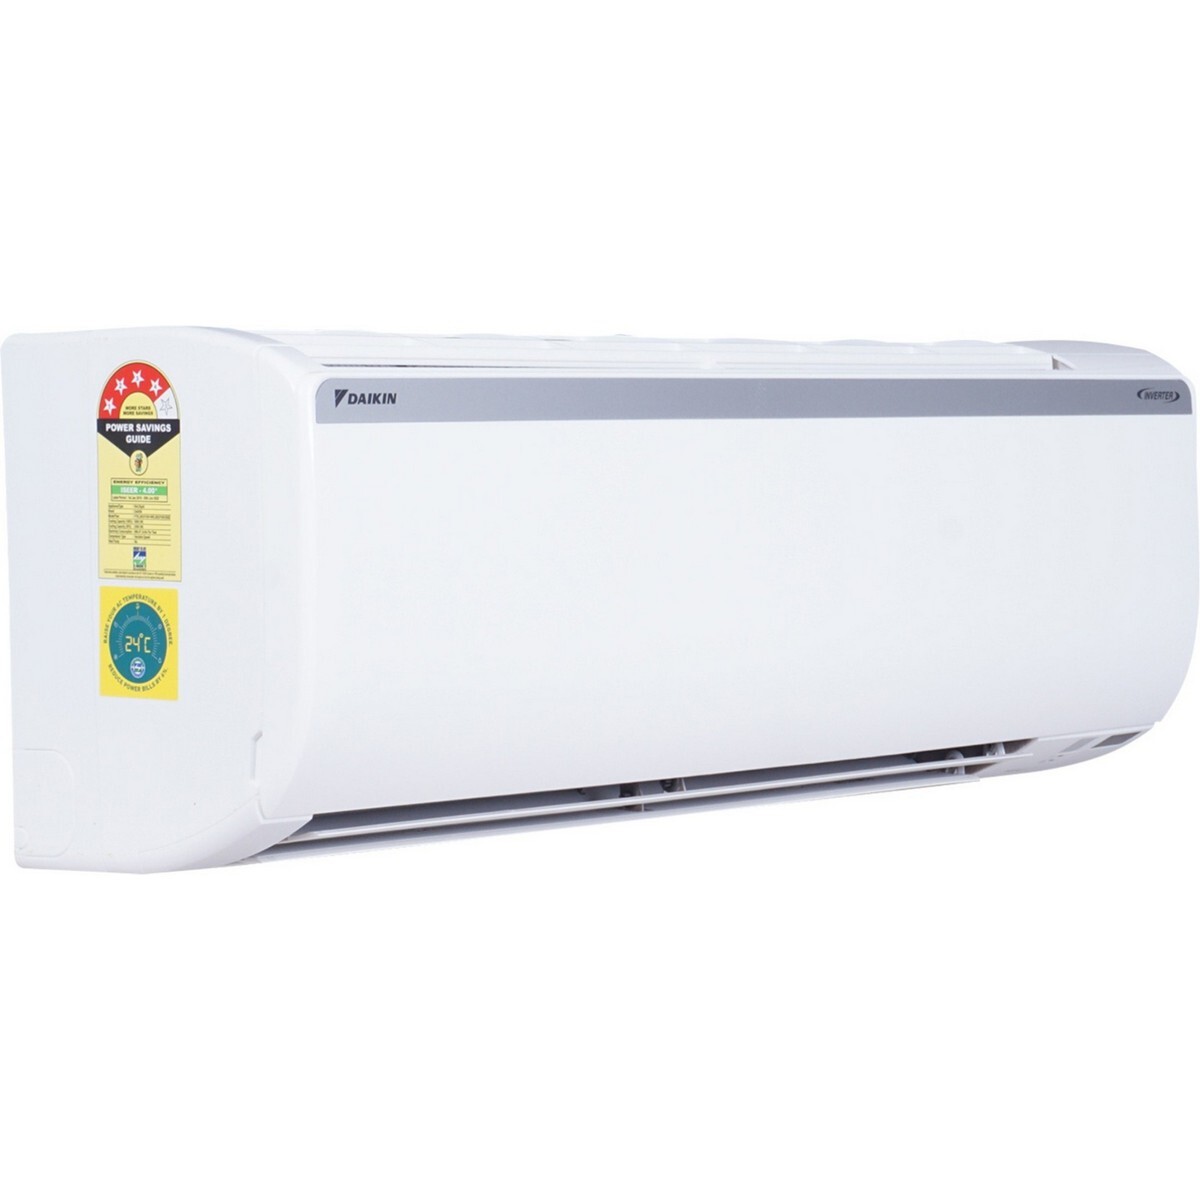 Daikin Inverter Air Conditioner FTKL50UV16 1.5Ton 3*